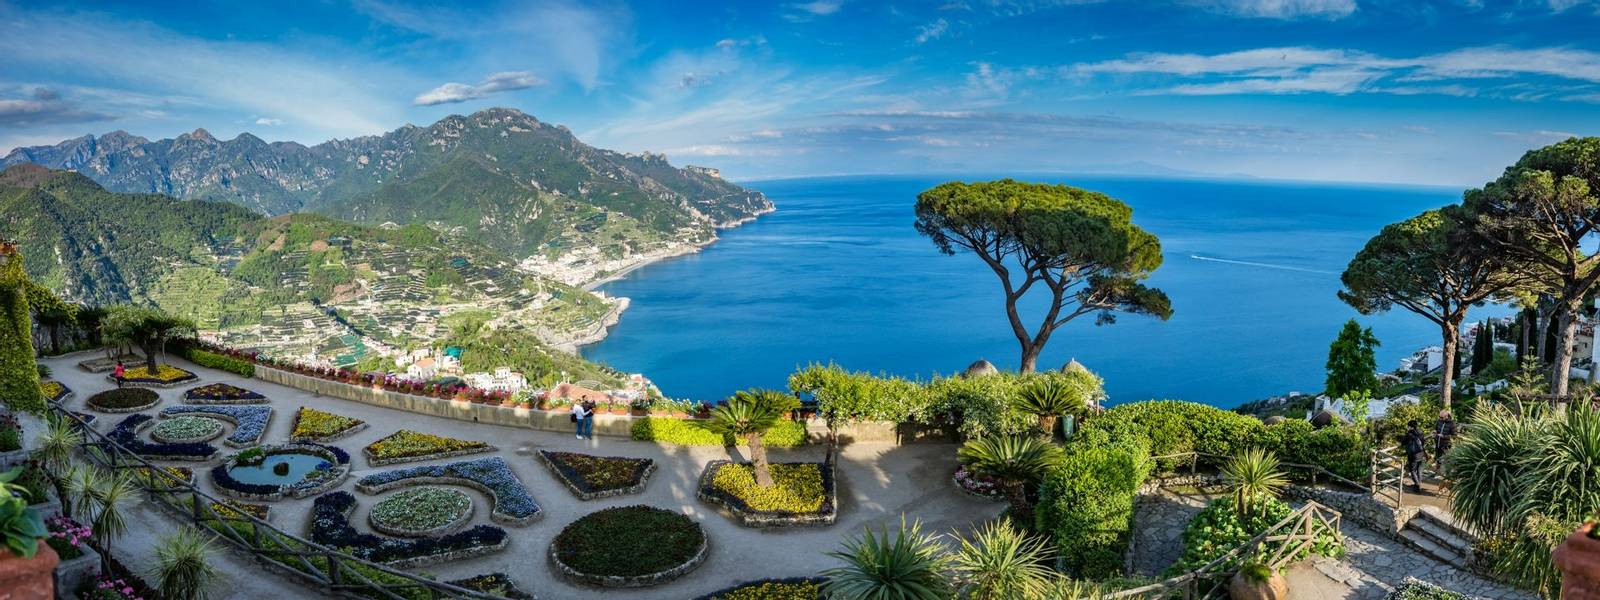 Sightseeing Villa Rufolo and it's gardens in Ravello mountaintop setting on Italy's most beautiful coastline, Ravello, Italy